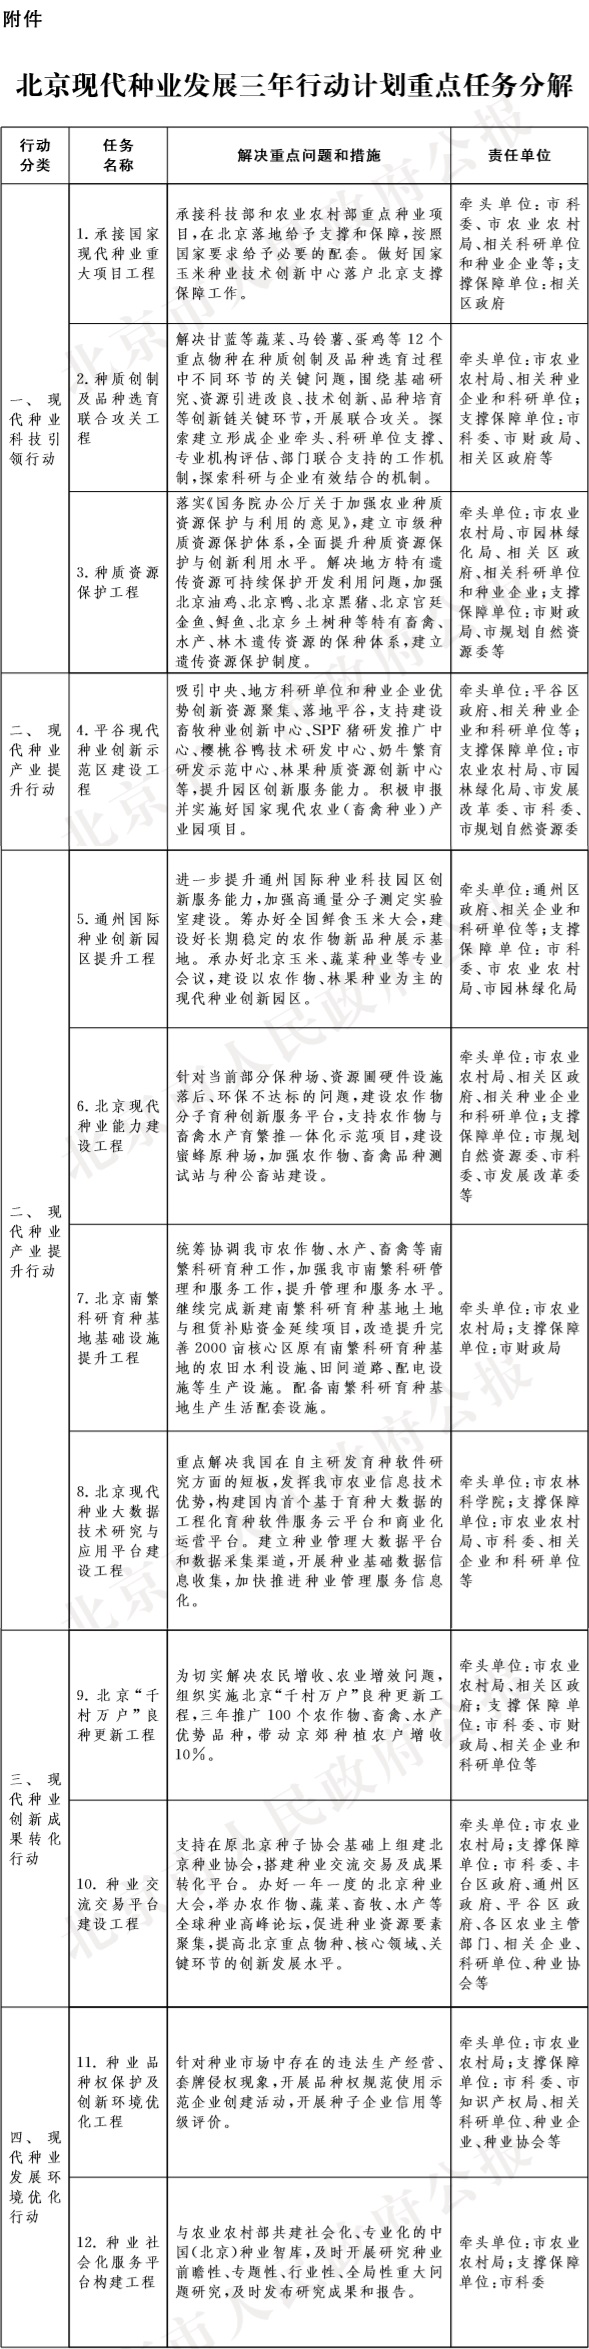 26-附件：北京现代种业发展三年行动计划重点任务分解.jpg